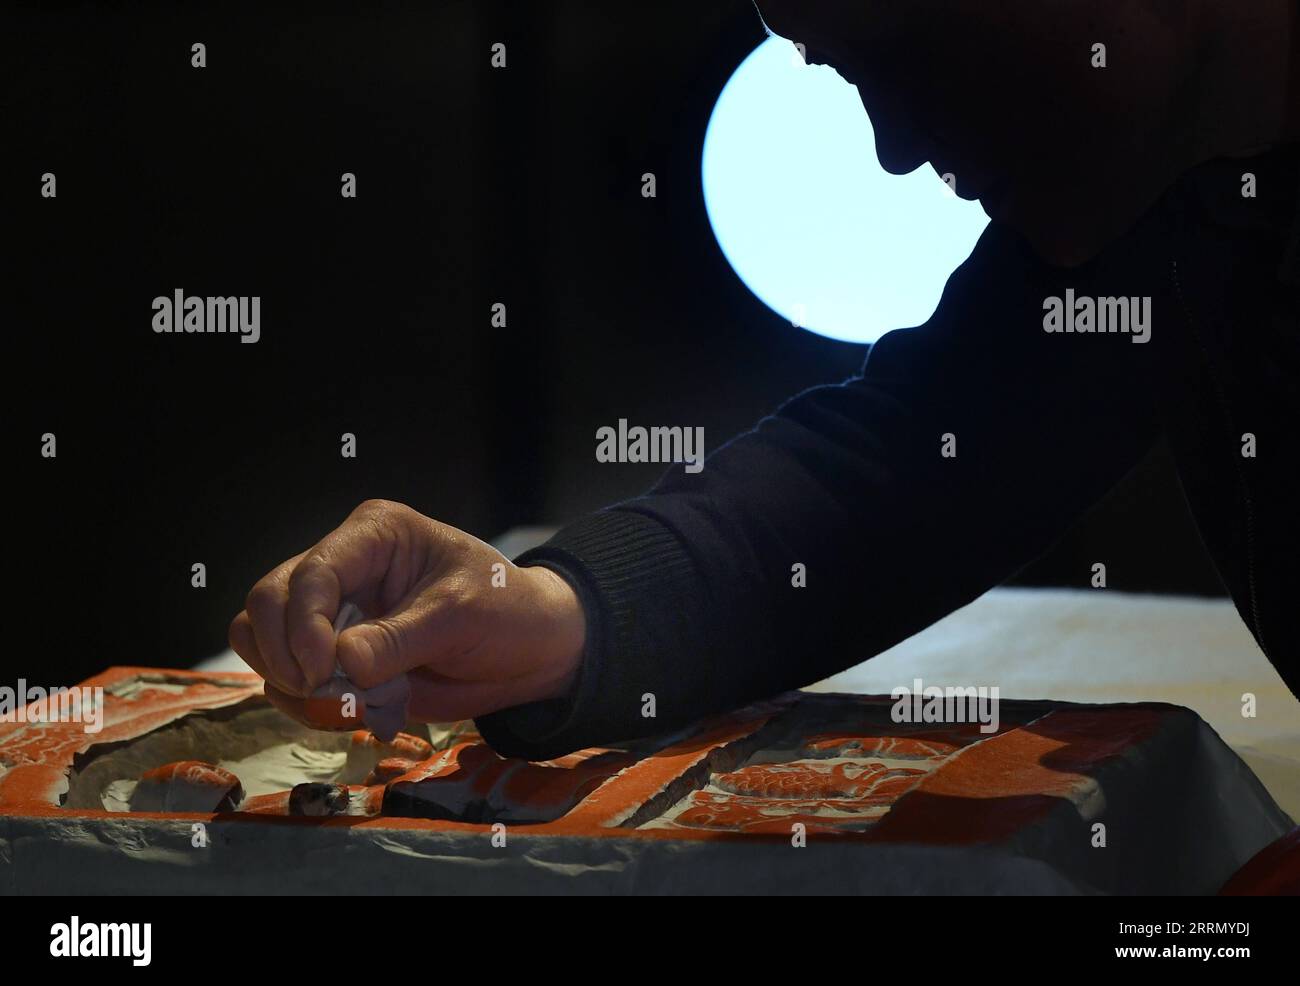 221121 -- ZHENGZHOU, 21 novembre 2022 -- li Renqing mostra come applicare l'inchiostro sulla carta sfregata in una sala espositiva del Zhengzhou Shang Dynasty Ruins Museum a Zhengzhou, provincia di Henan, Cina centrale, 17 novembre 2022. Fare gomme per le iscrizioni in tablet è un mestiere con una storia di oltre 1.000 anni in Cina, inventato come un modo per copiare documenti ancor prima dell'arte della stampa. Rinnovando il tradizionale mestiere da sfregamento che può essere applicato solo alla superficie piana, li Renqing, nato nel 1963 a Xinyang, nella provincia di Henan, nella Cina centrale, ha lavorato per tutta la vita su gomme di alto rilievo culturale Foto Stock